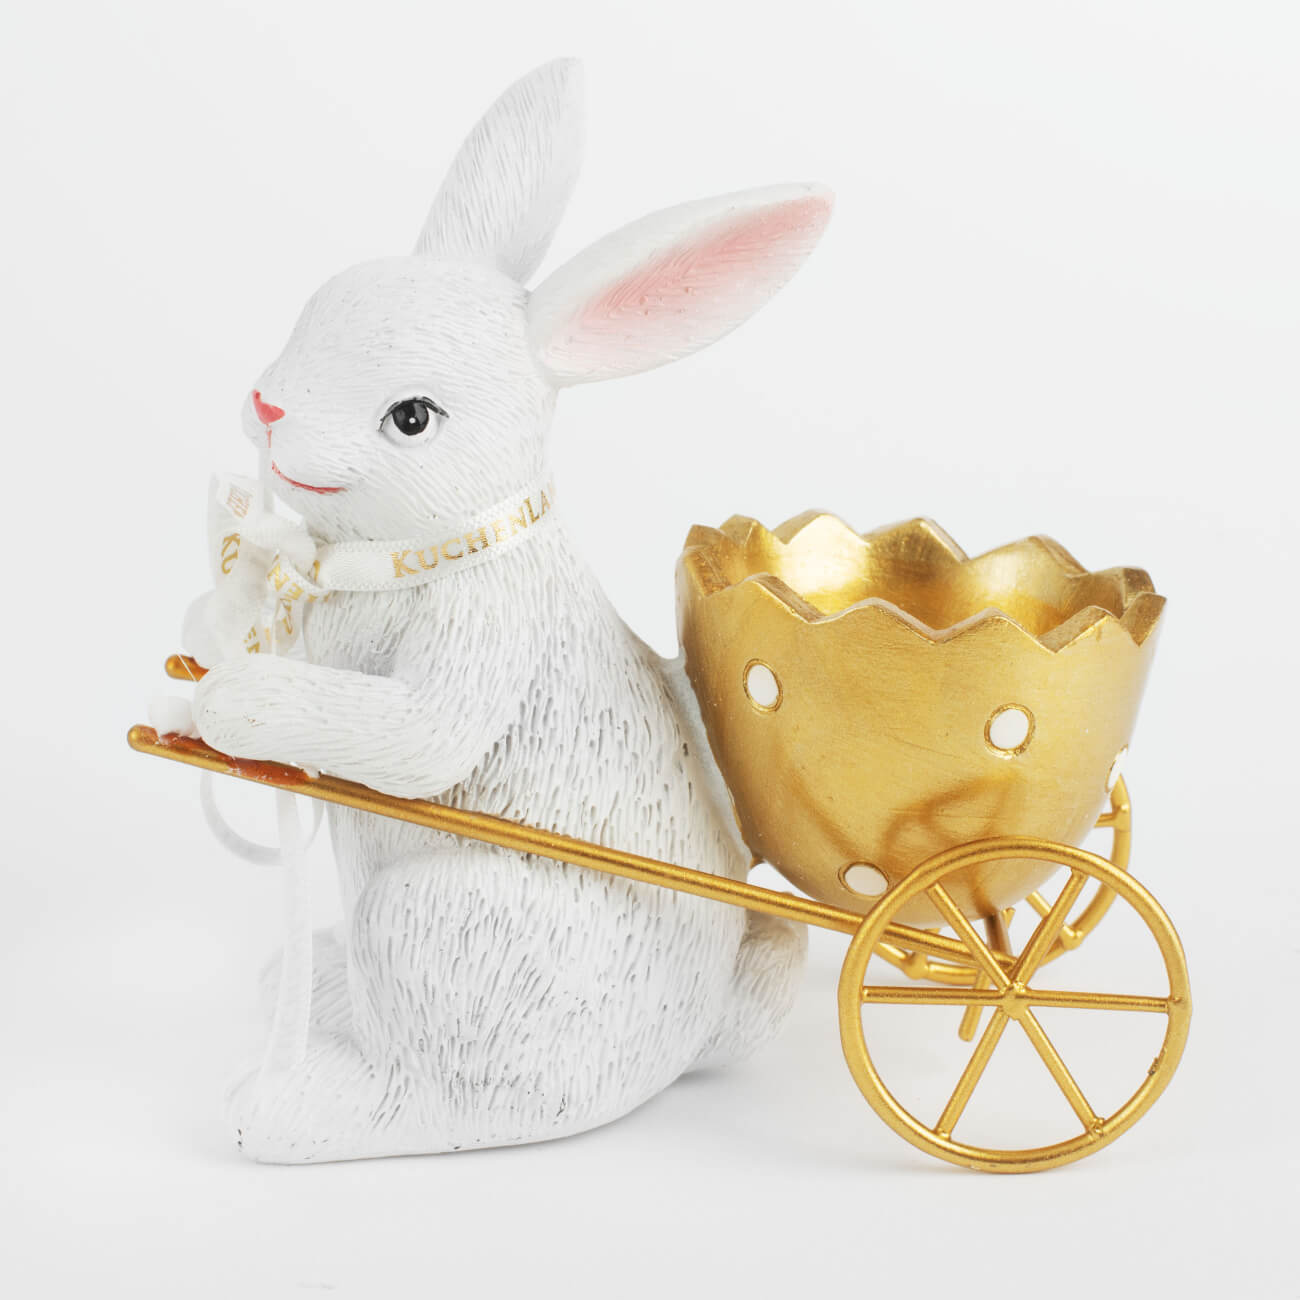 Подставка для яйца, 12 см, полирезин, бело-золотистая, Кролик с тележкой, Easter gold яйца подвески для декорирования